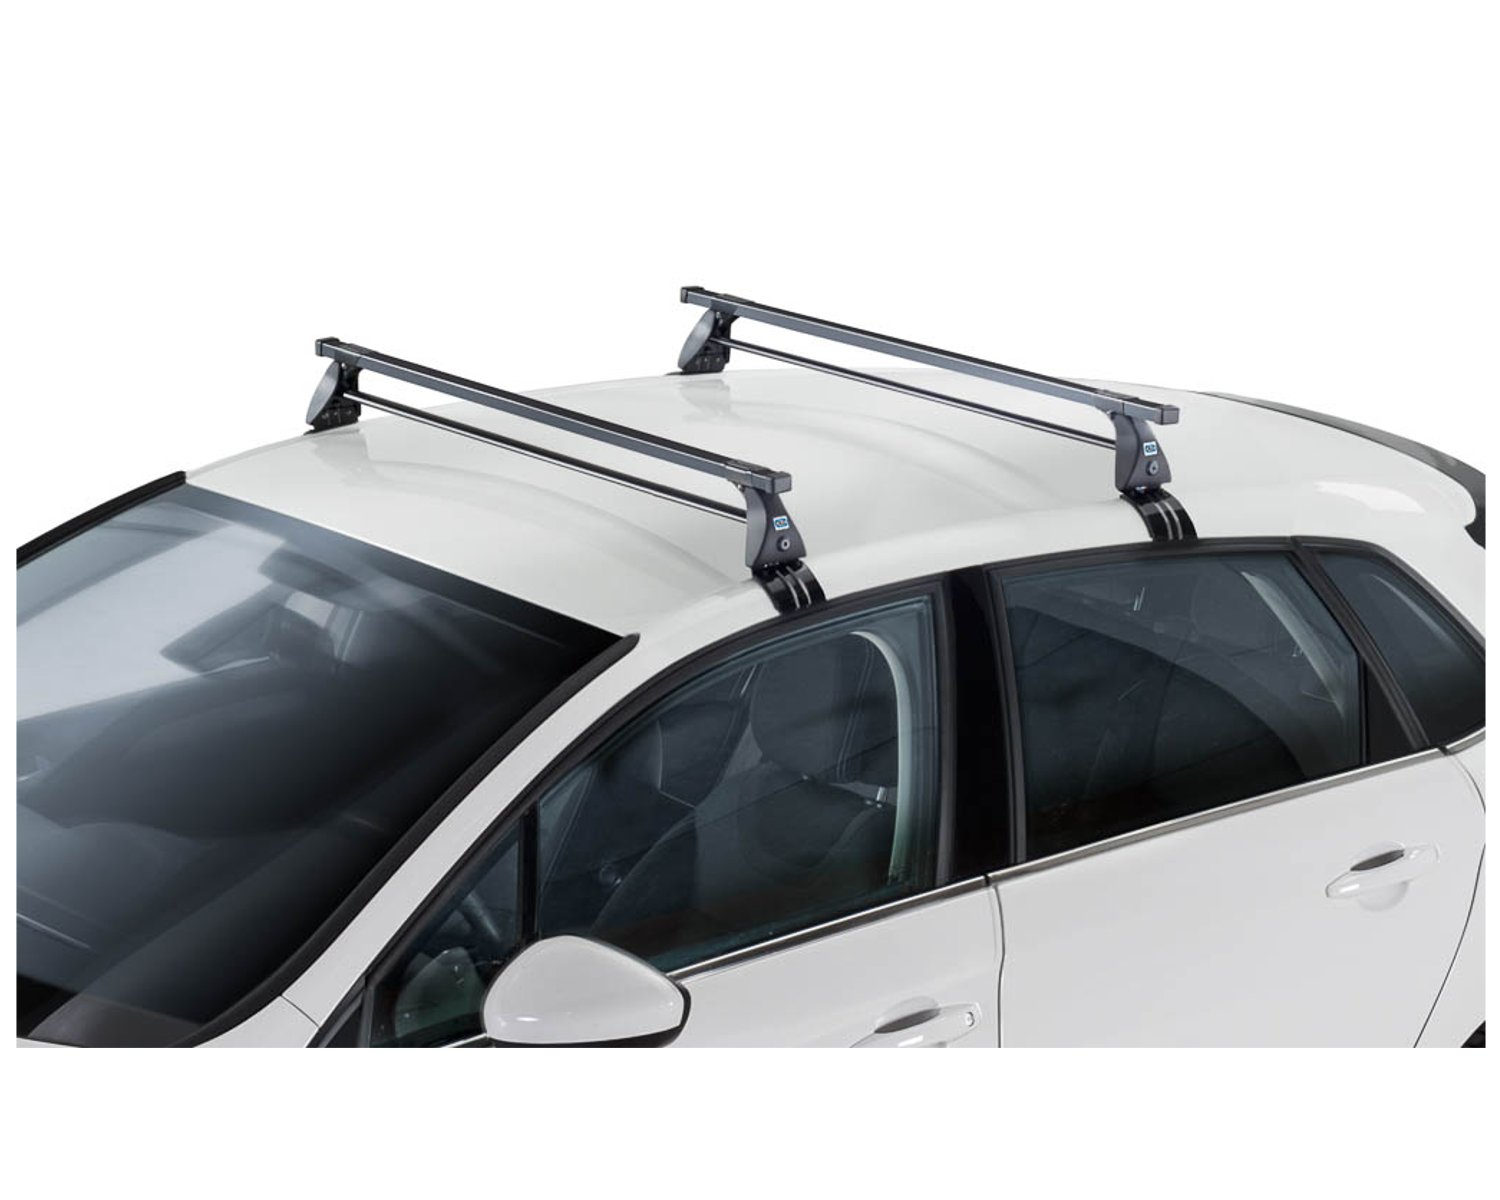 Багажник на крышу автомобиля можно. Багажник на крышу Рено Меган 2 седан. Рено Сценик 2 багажник. Багажник Рено Сценик 2 стеклянная крыша. Машина с багажником на крыше.